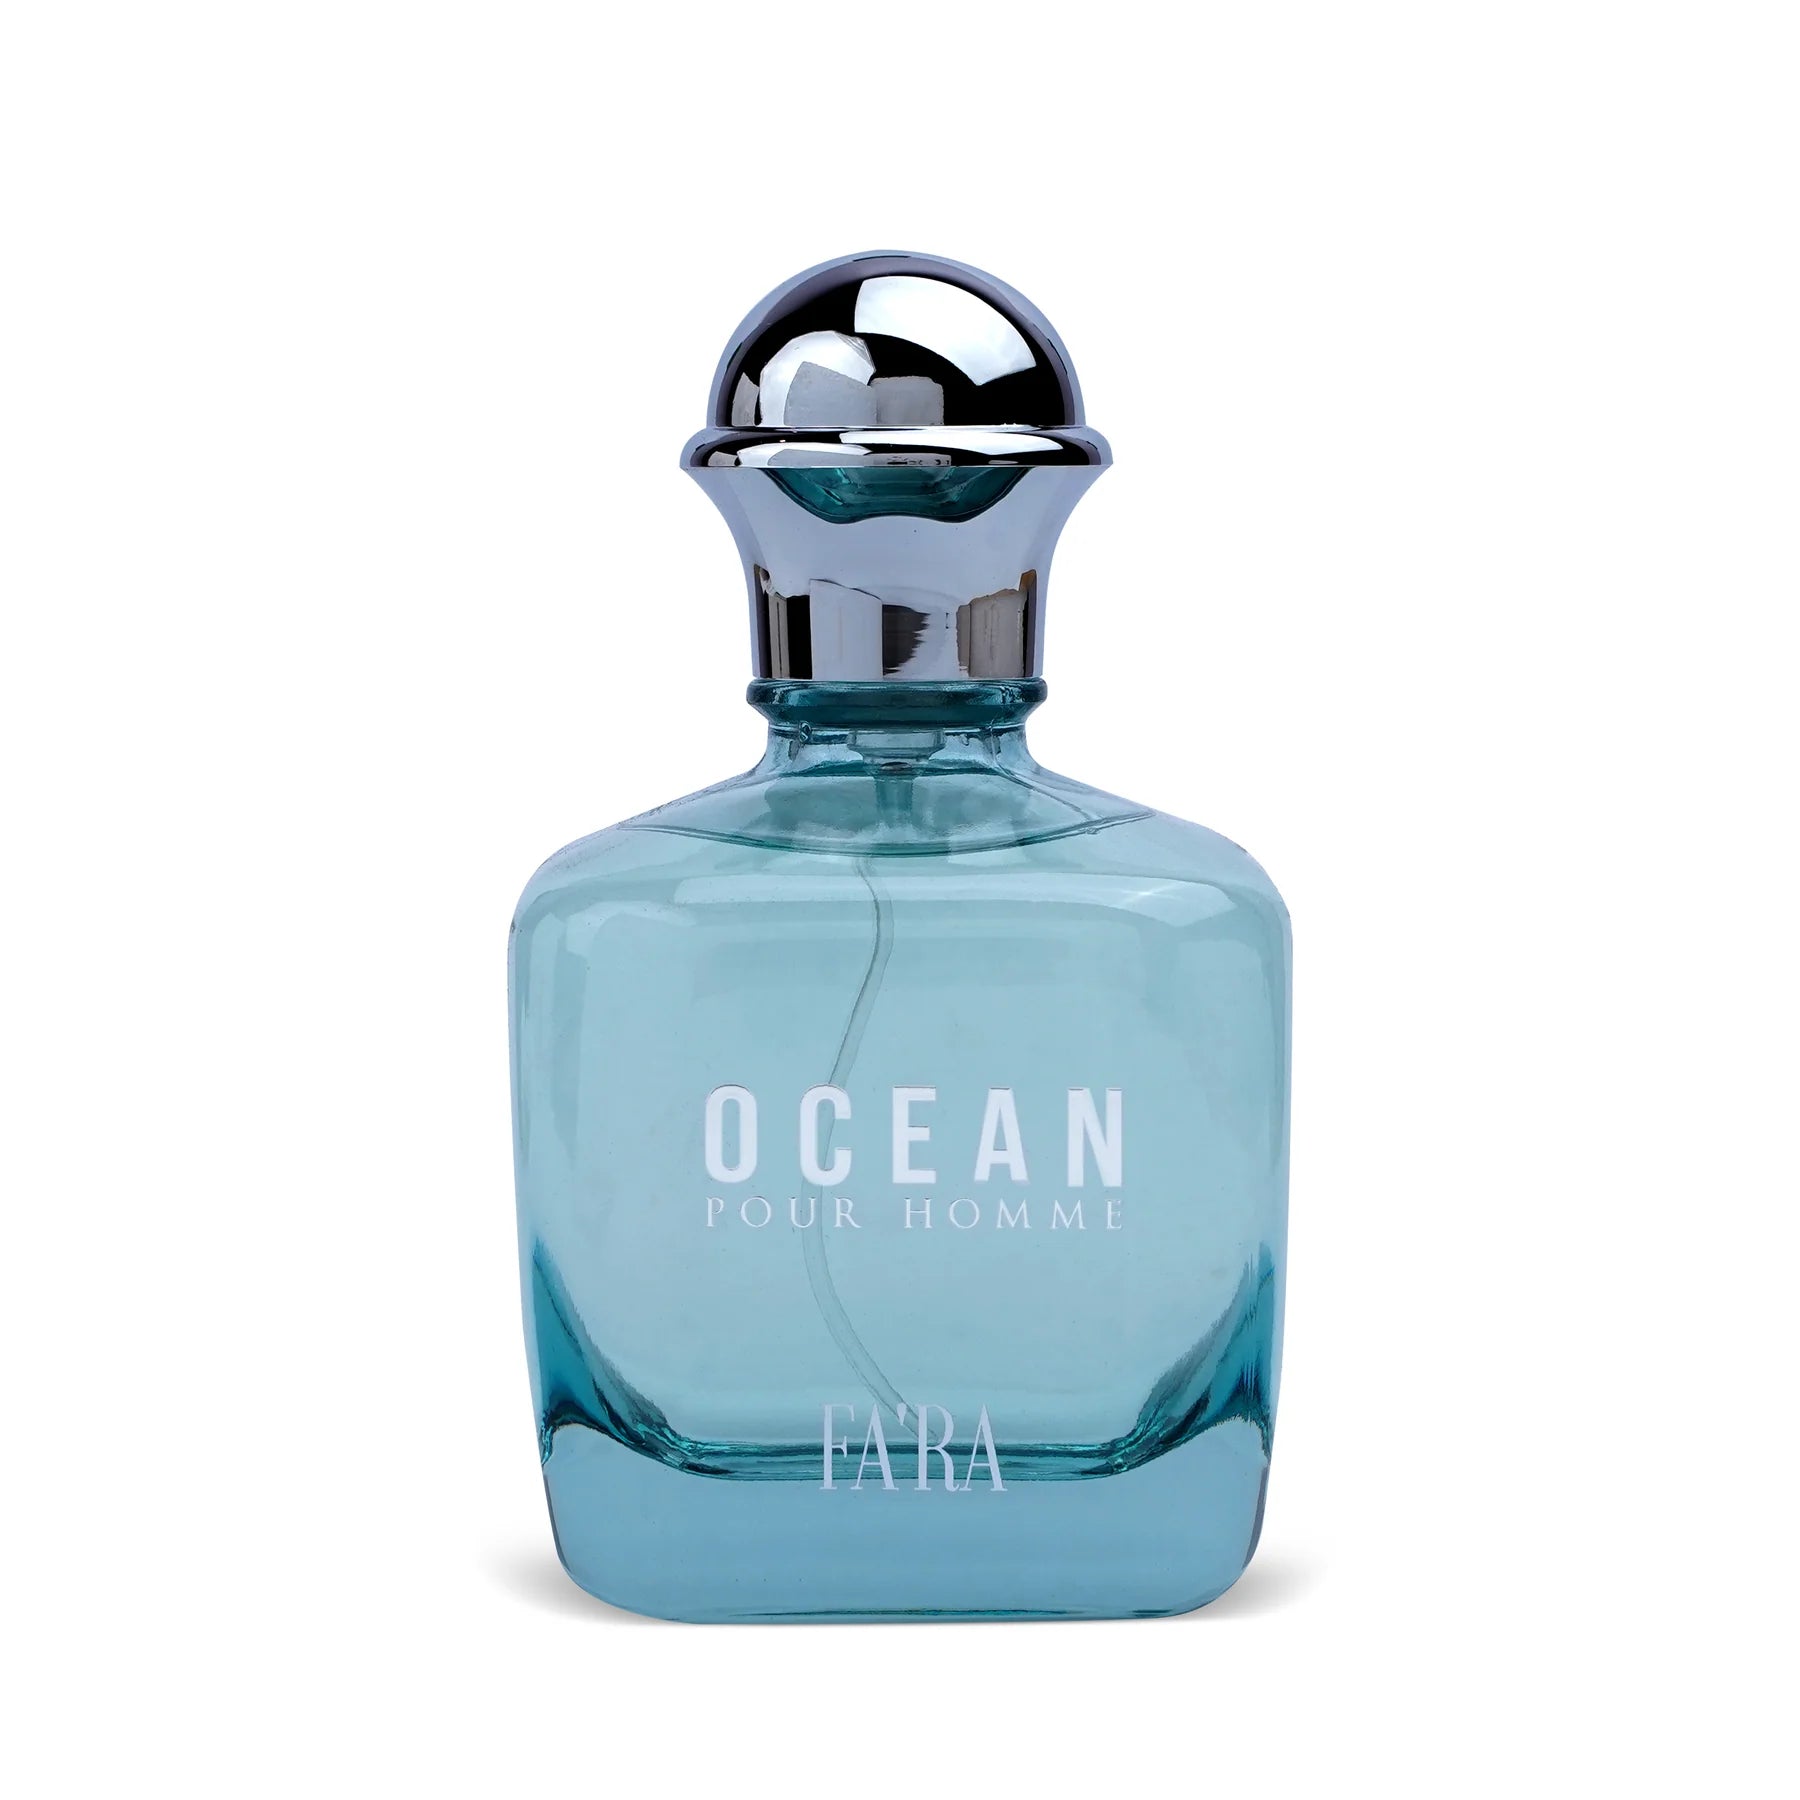 Fa'ra Ocean Pour Homme Perfume Edp For Men 100Ml - Allurebeautypk